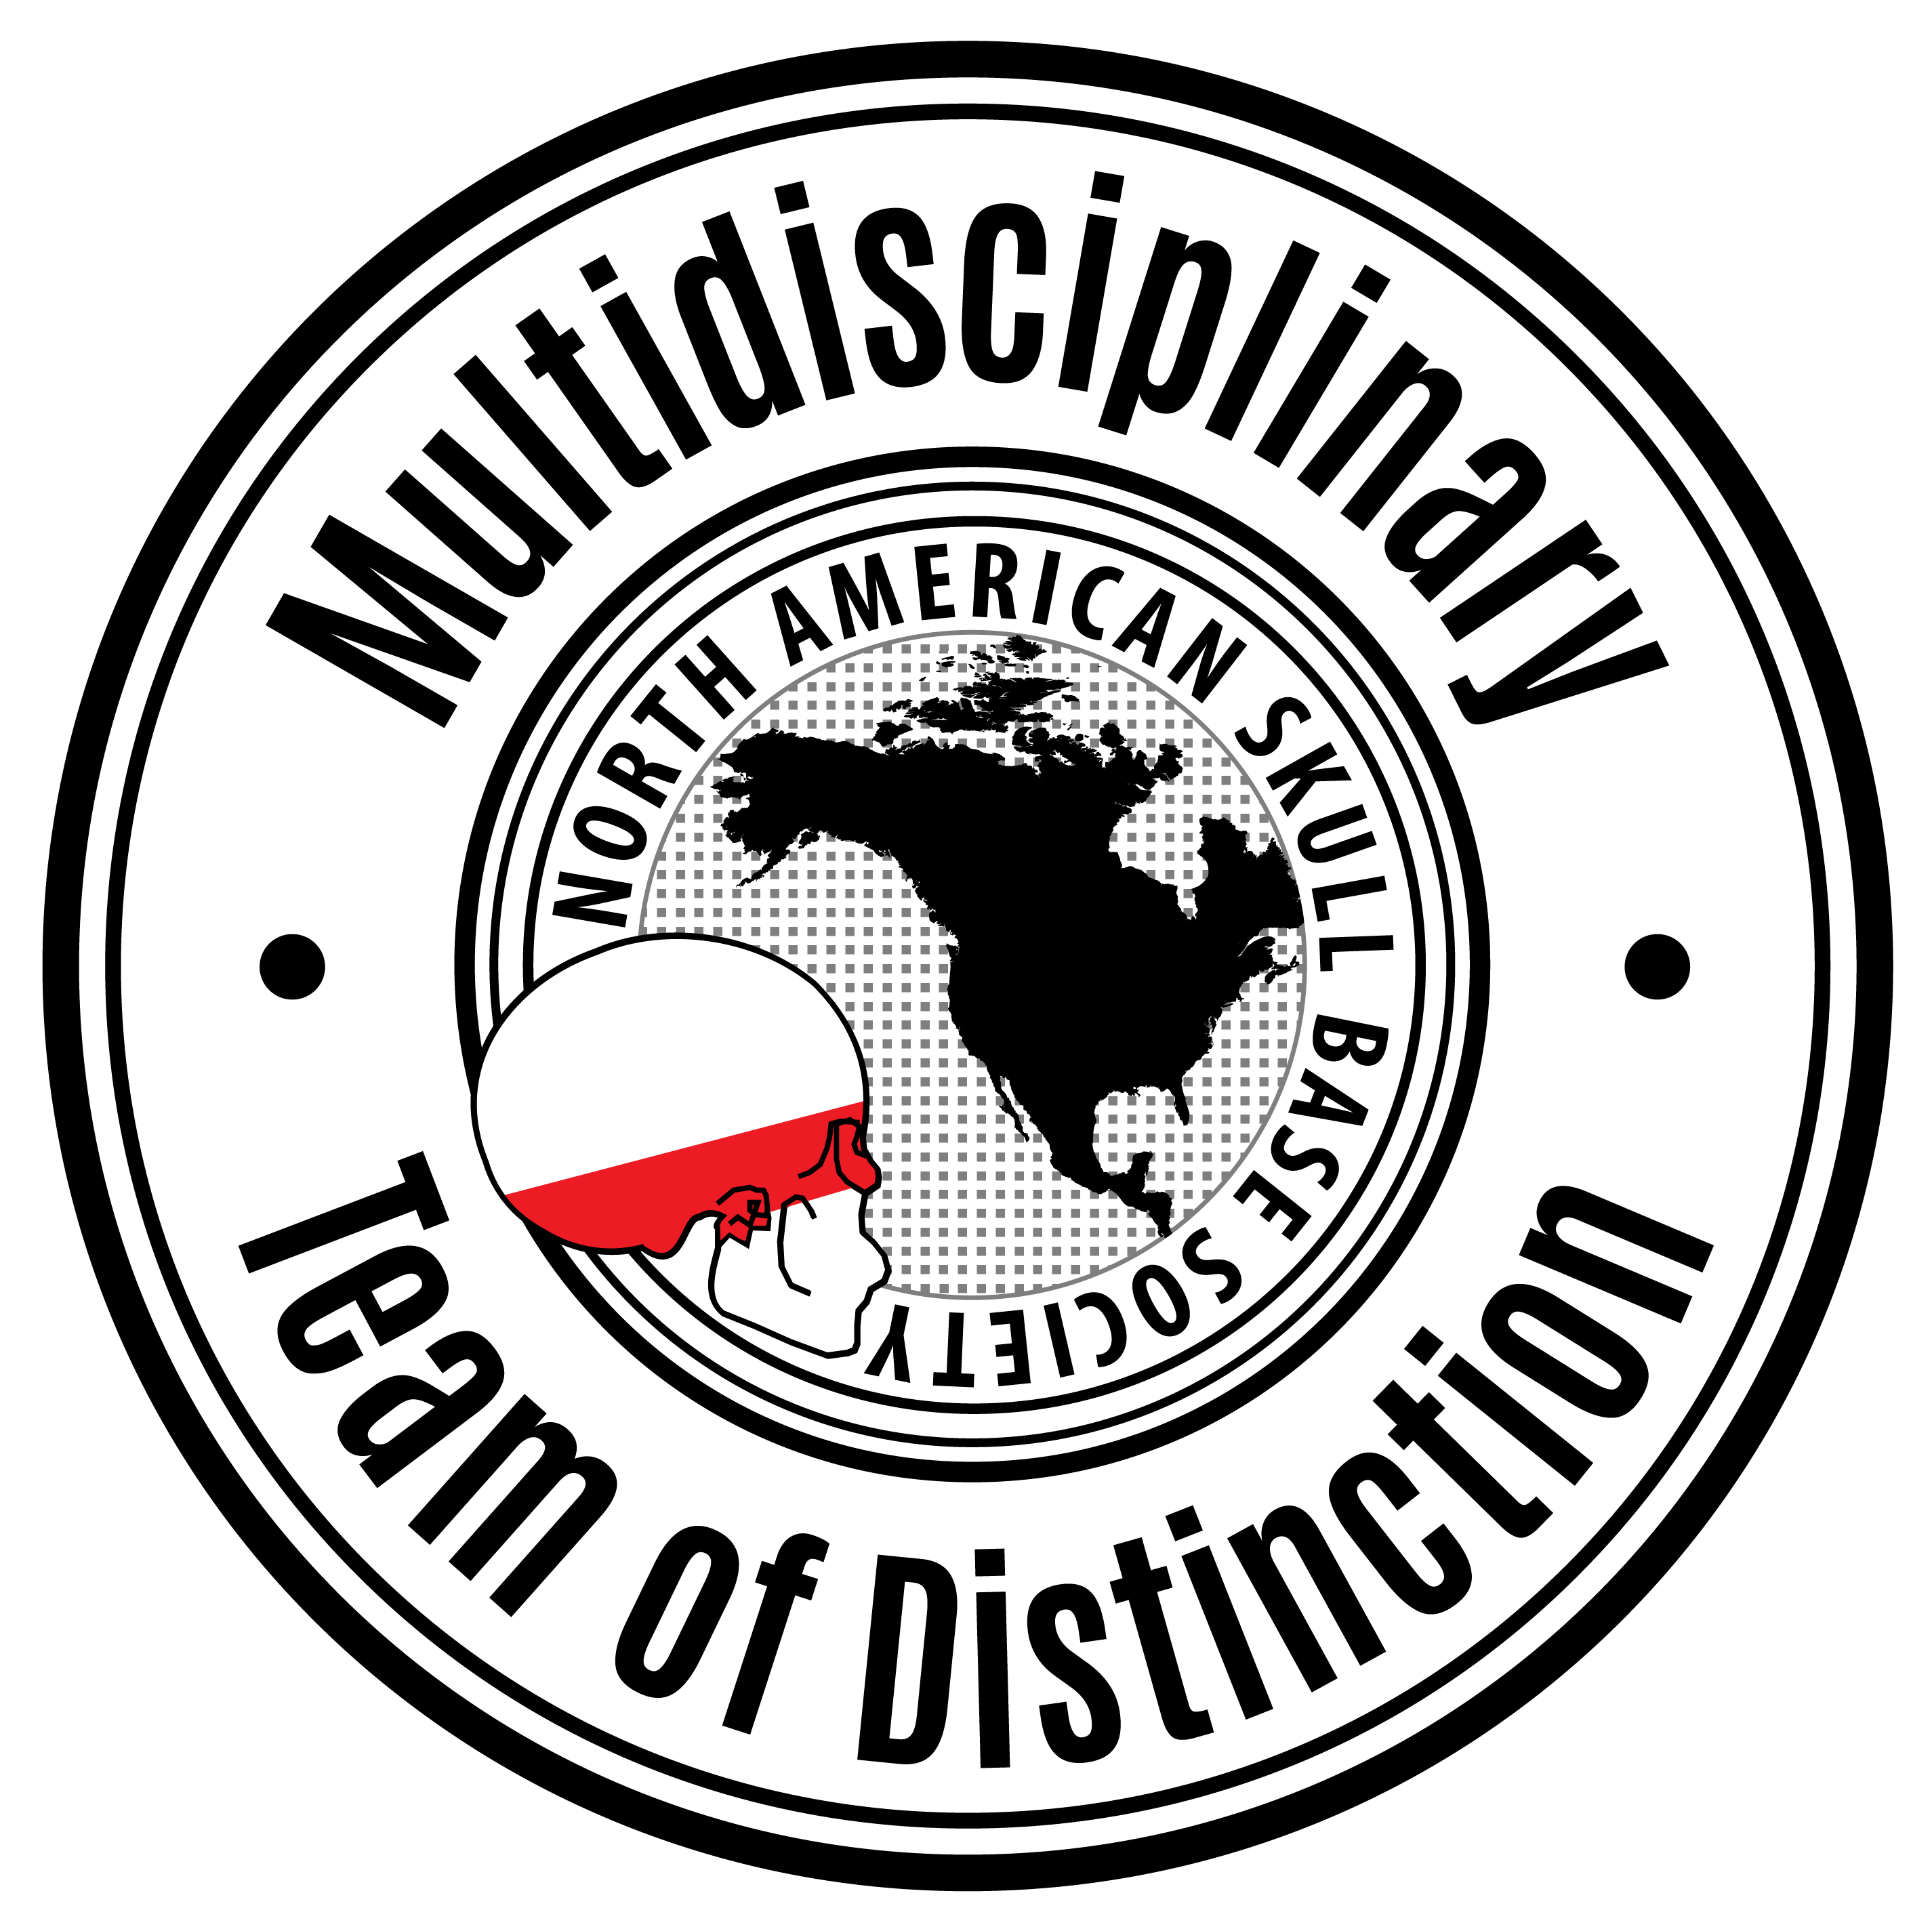 NASBS Skull Base Team of Distinction Logo FINAL for 2021